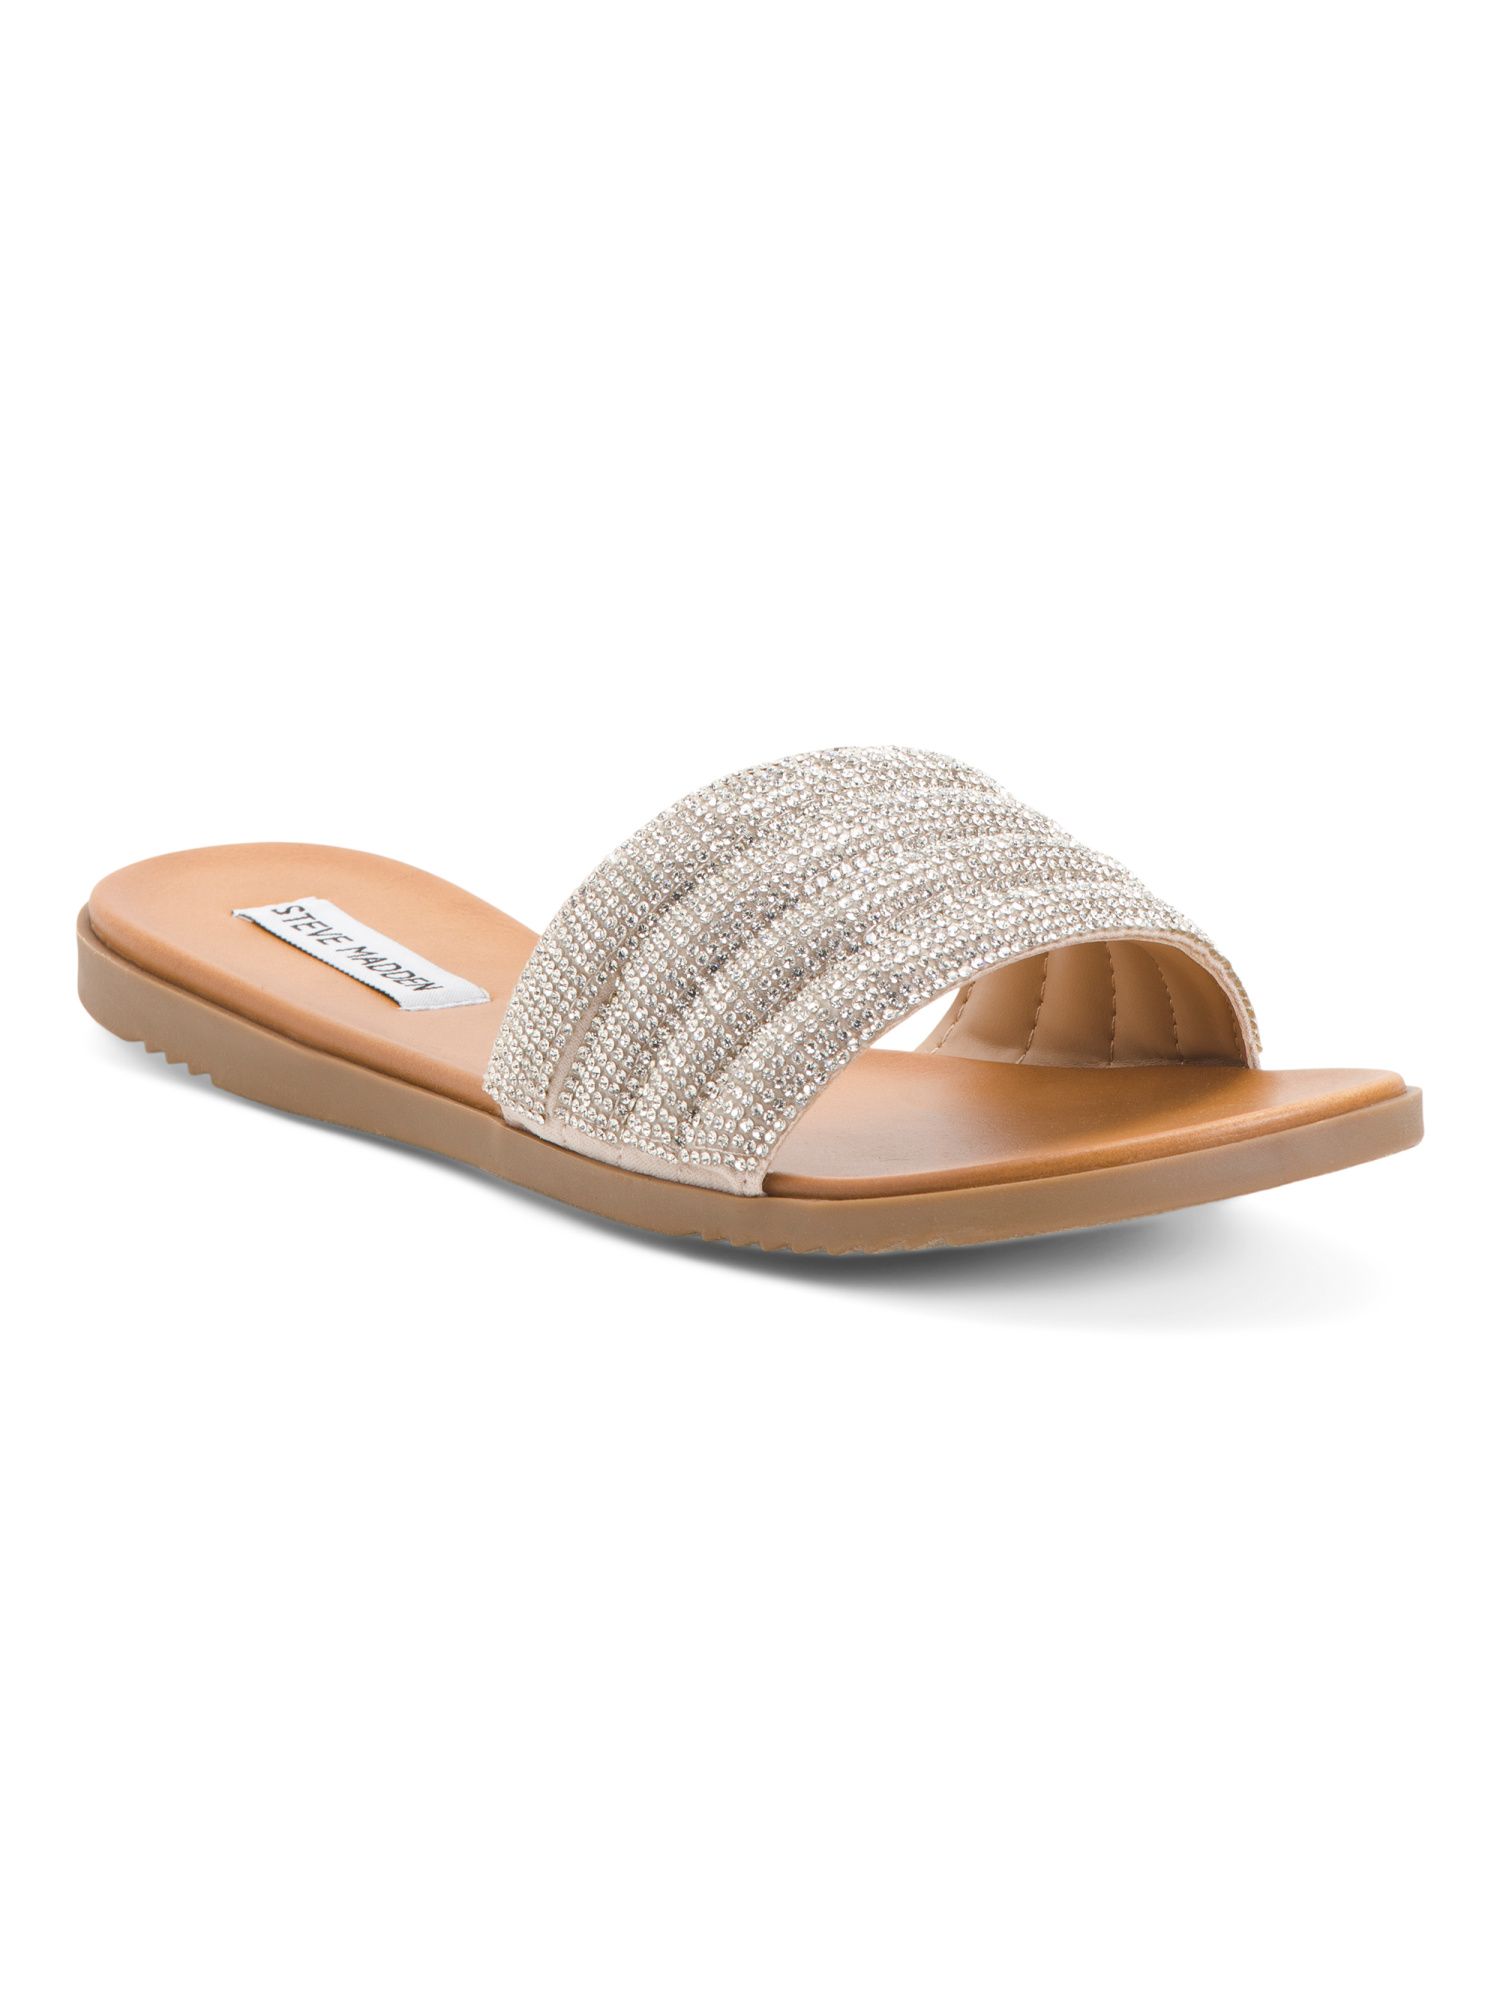 Padded Bling Embellishment Slide Sandals | TJ Maxx